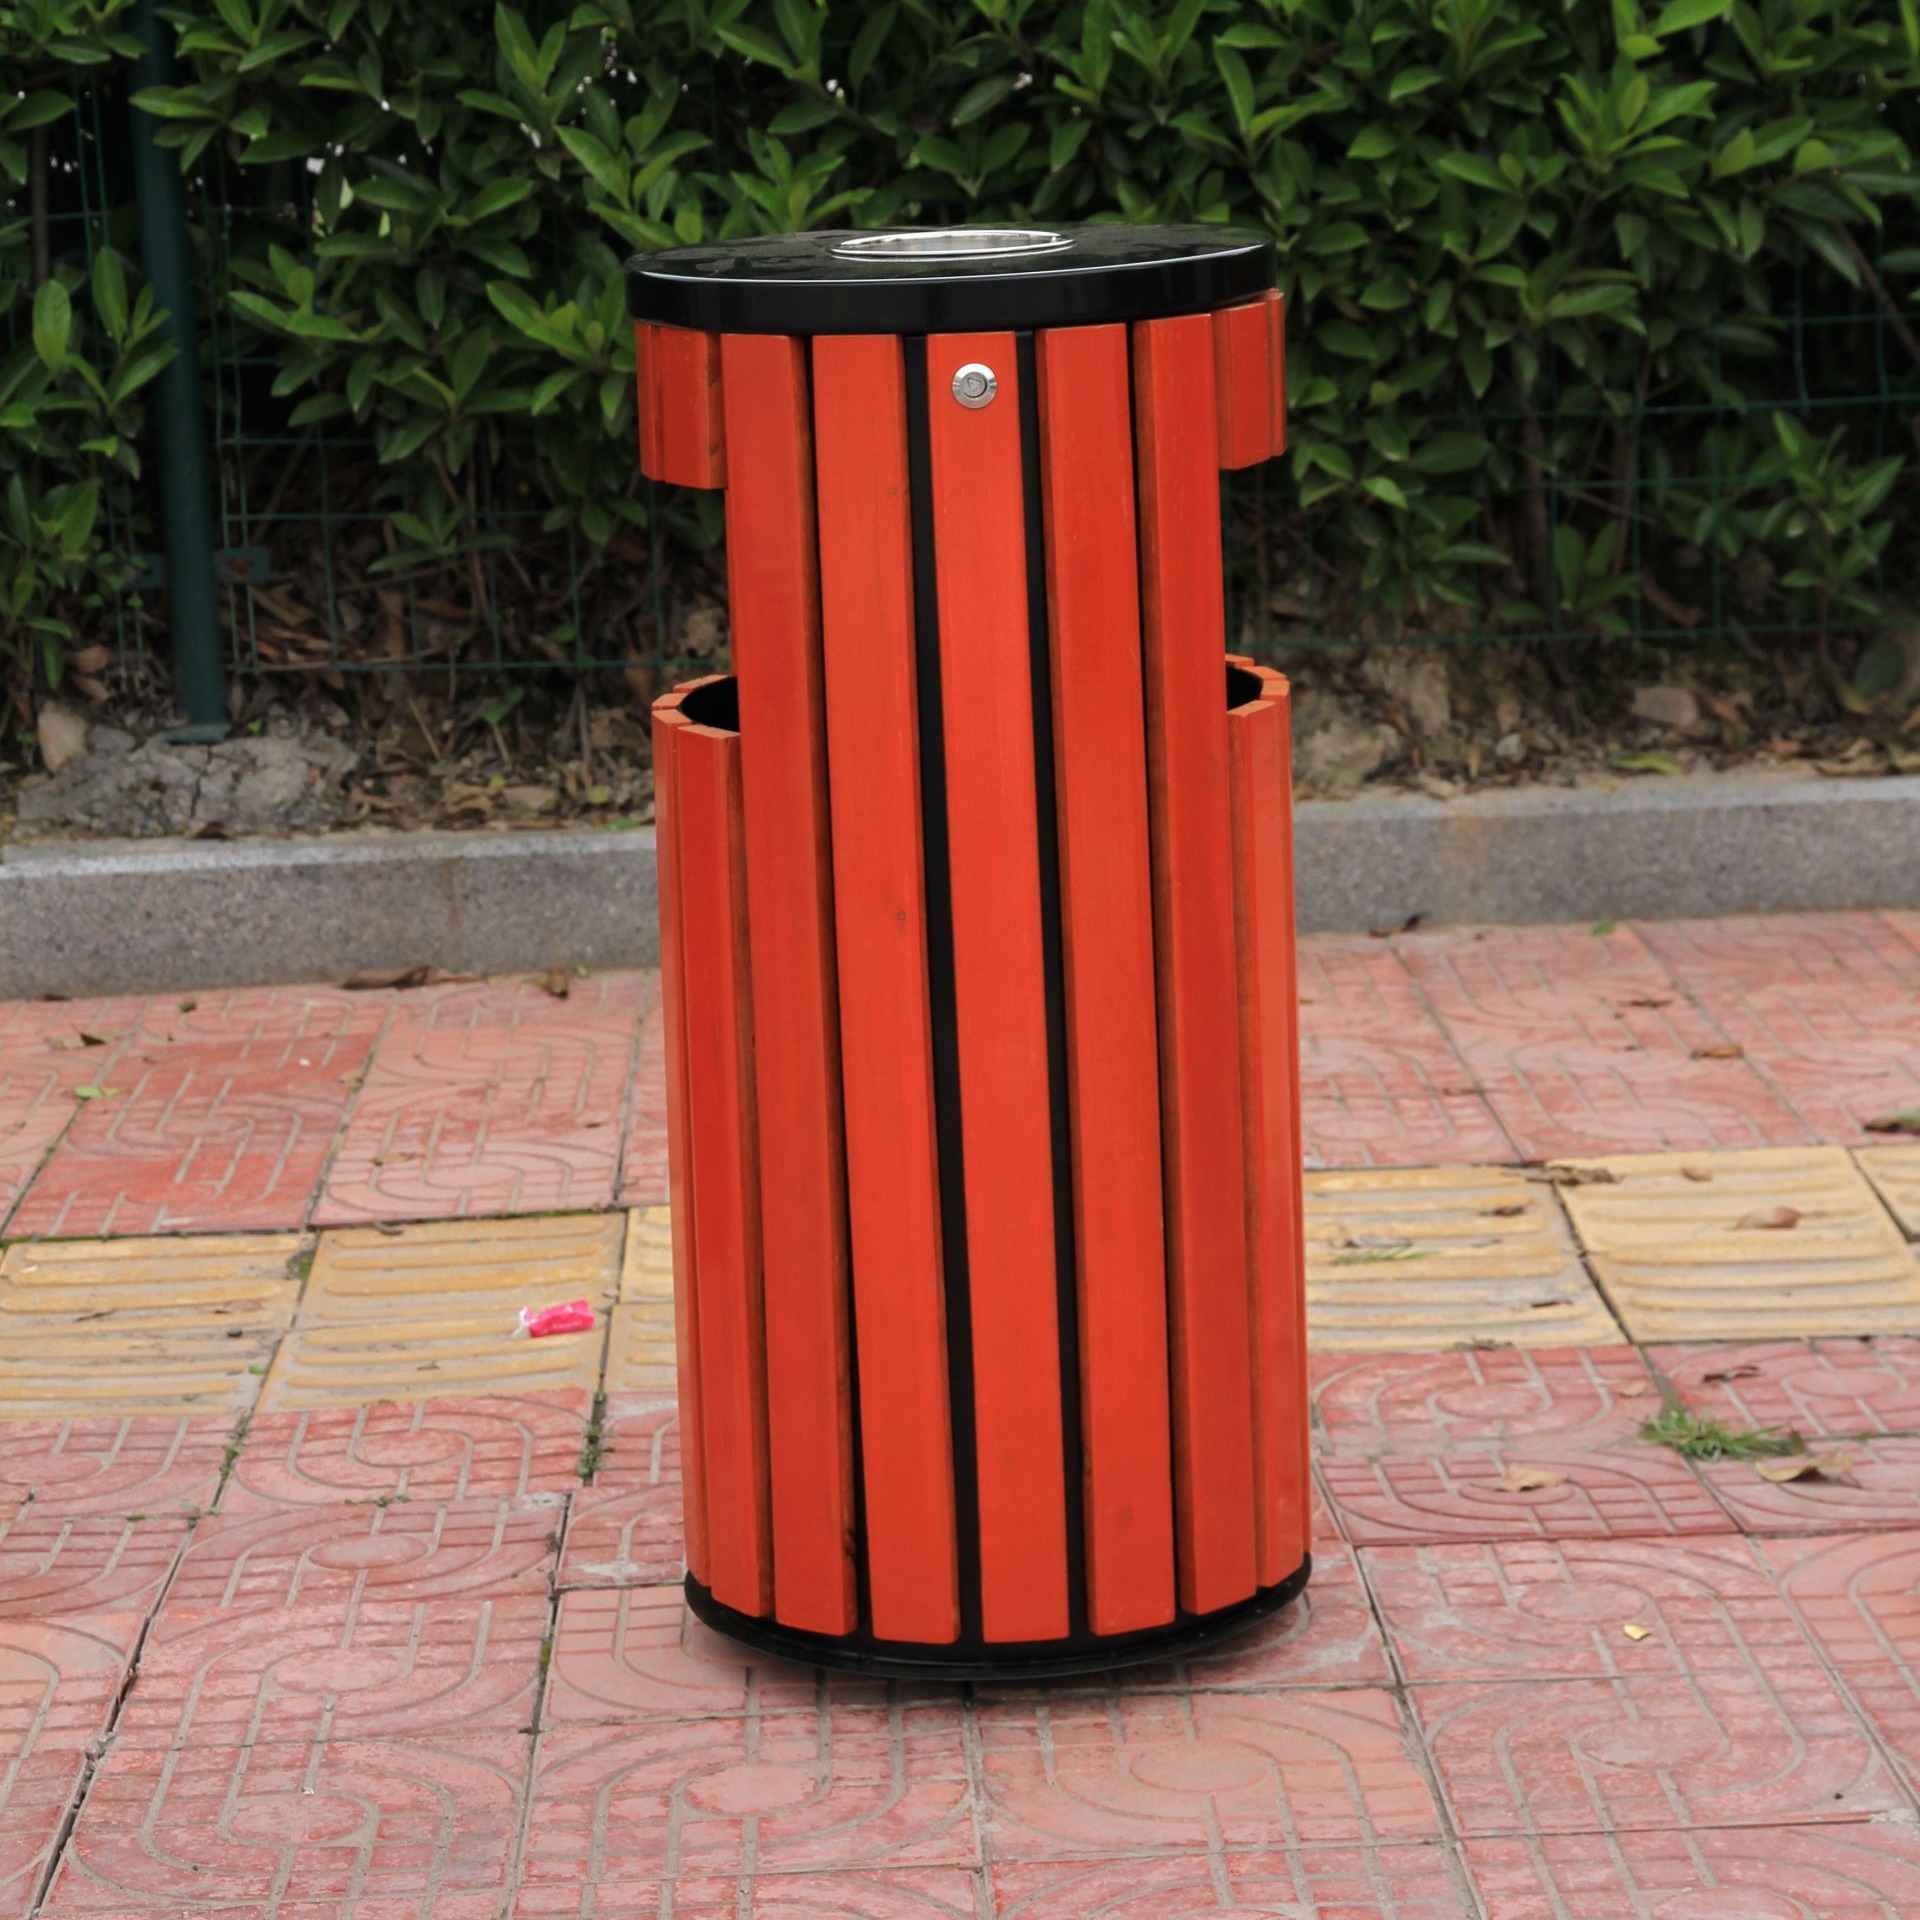 不锈钢垃圾桶 环保分类垃圾桶  木条垃圾桶  钢制分类垃圾桶   塑料垃圾桶图片